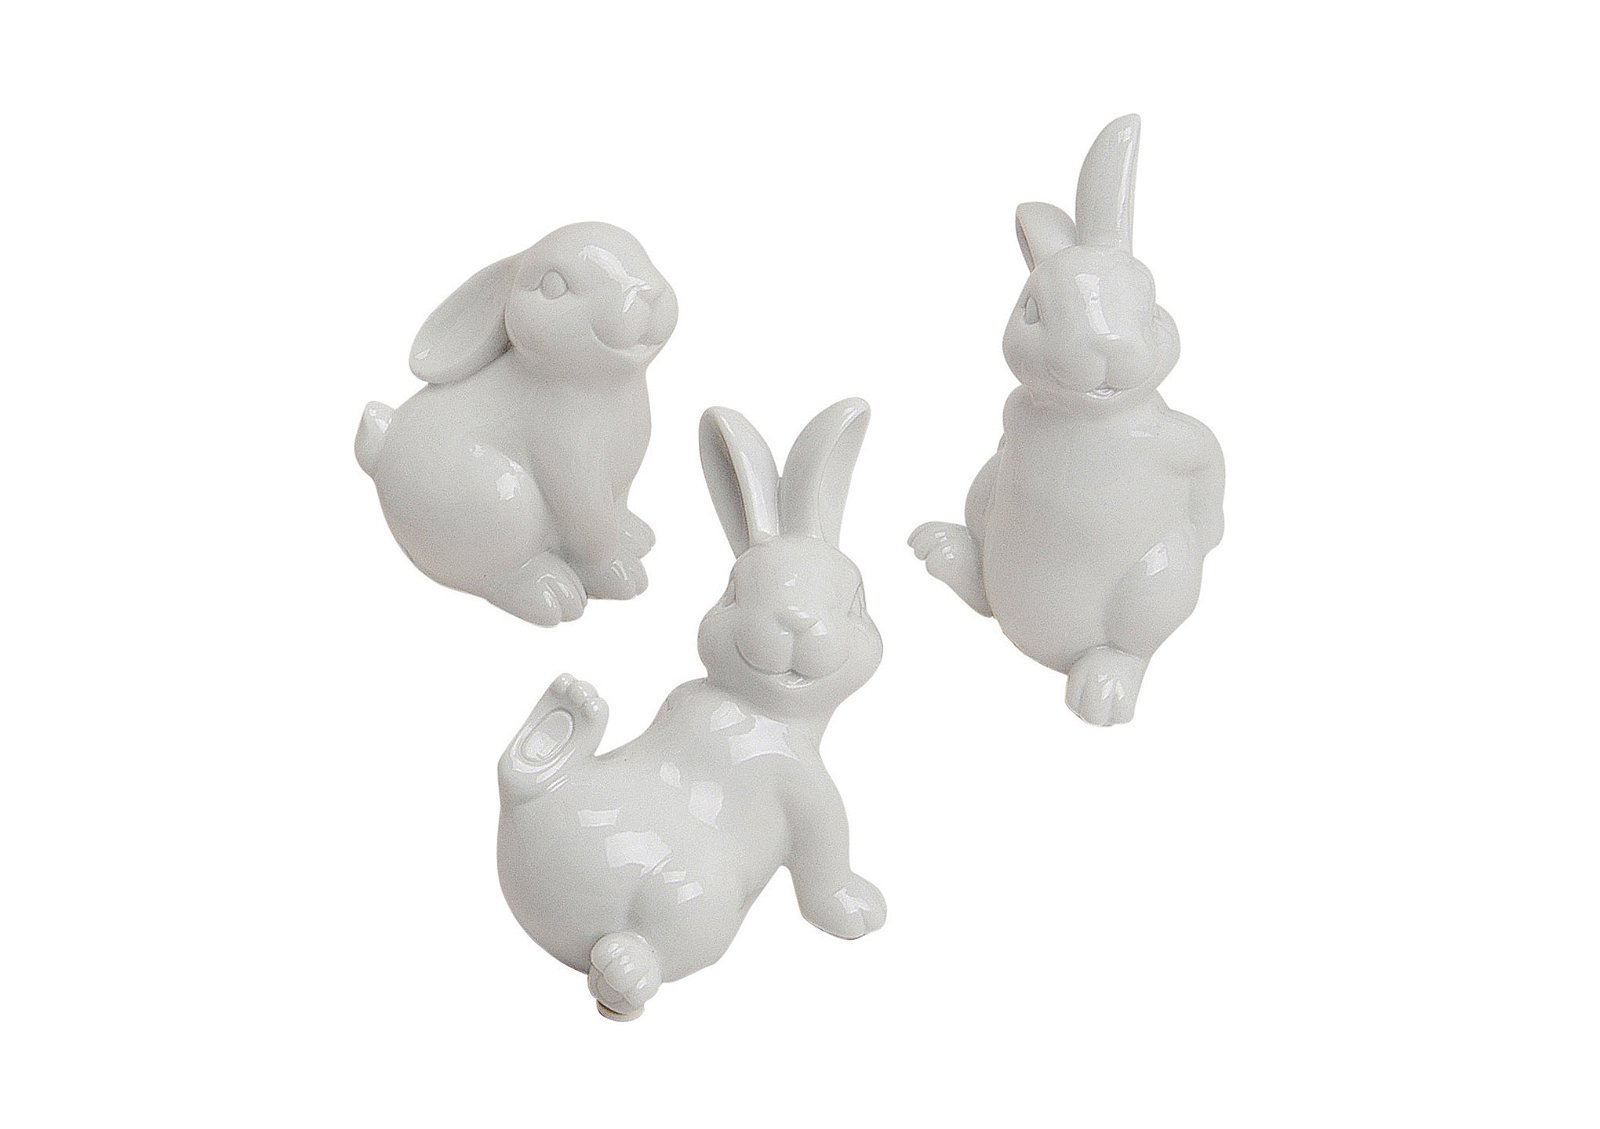 Rabbit ceramic 10-15cm